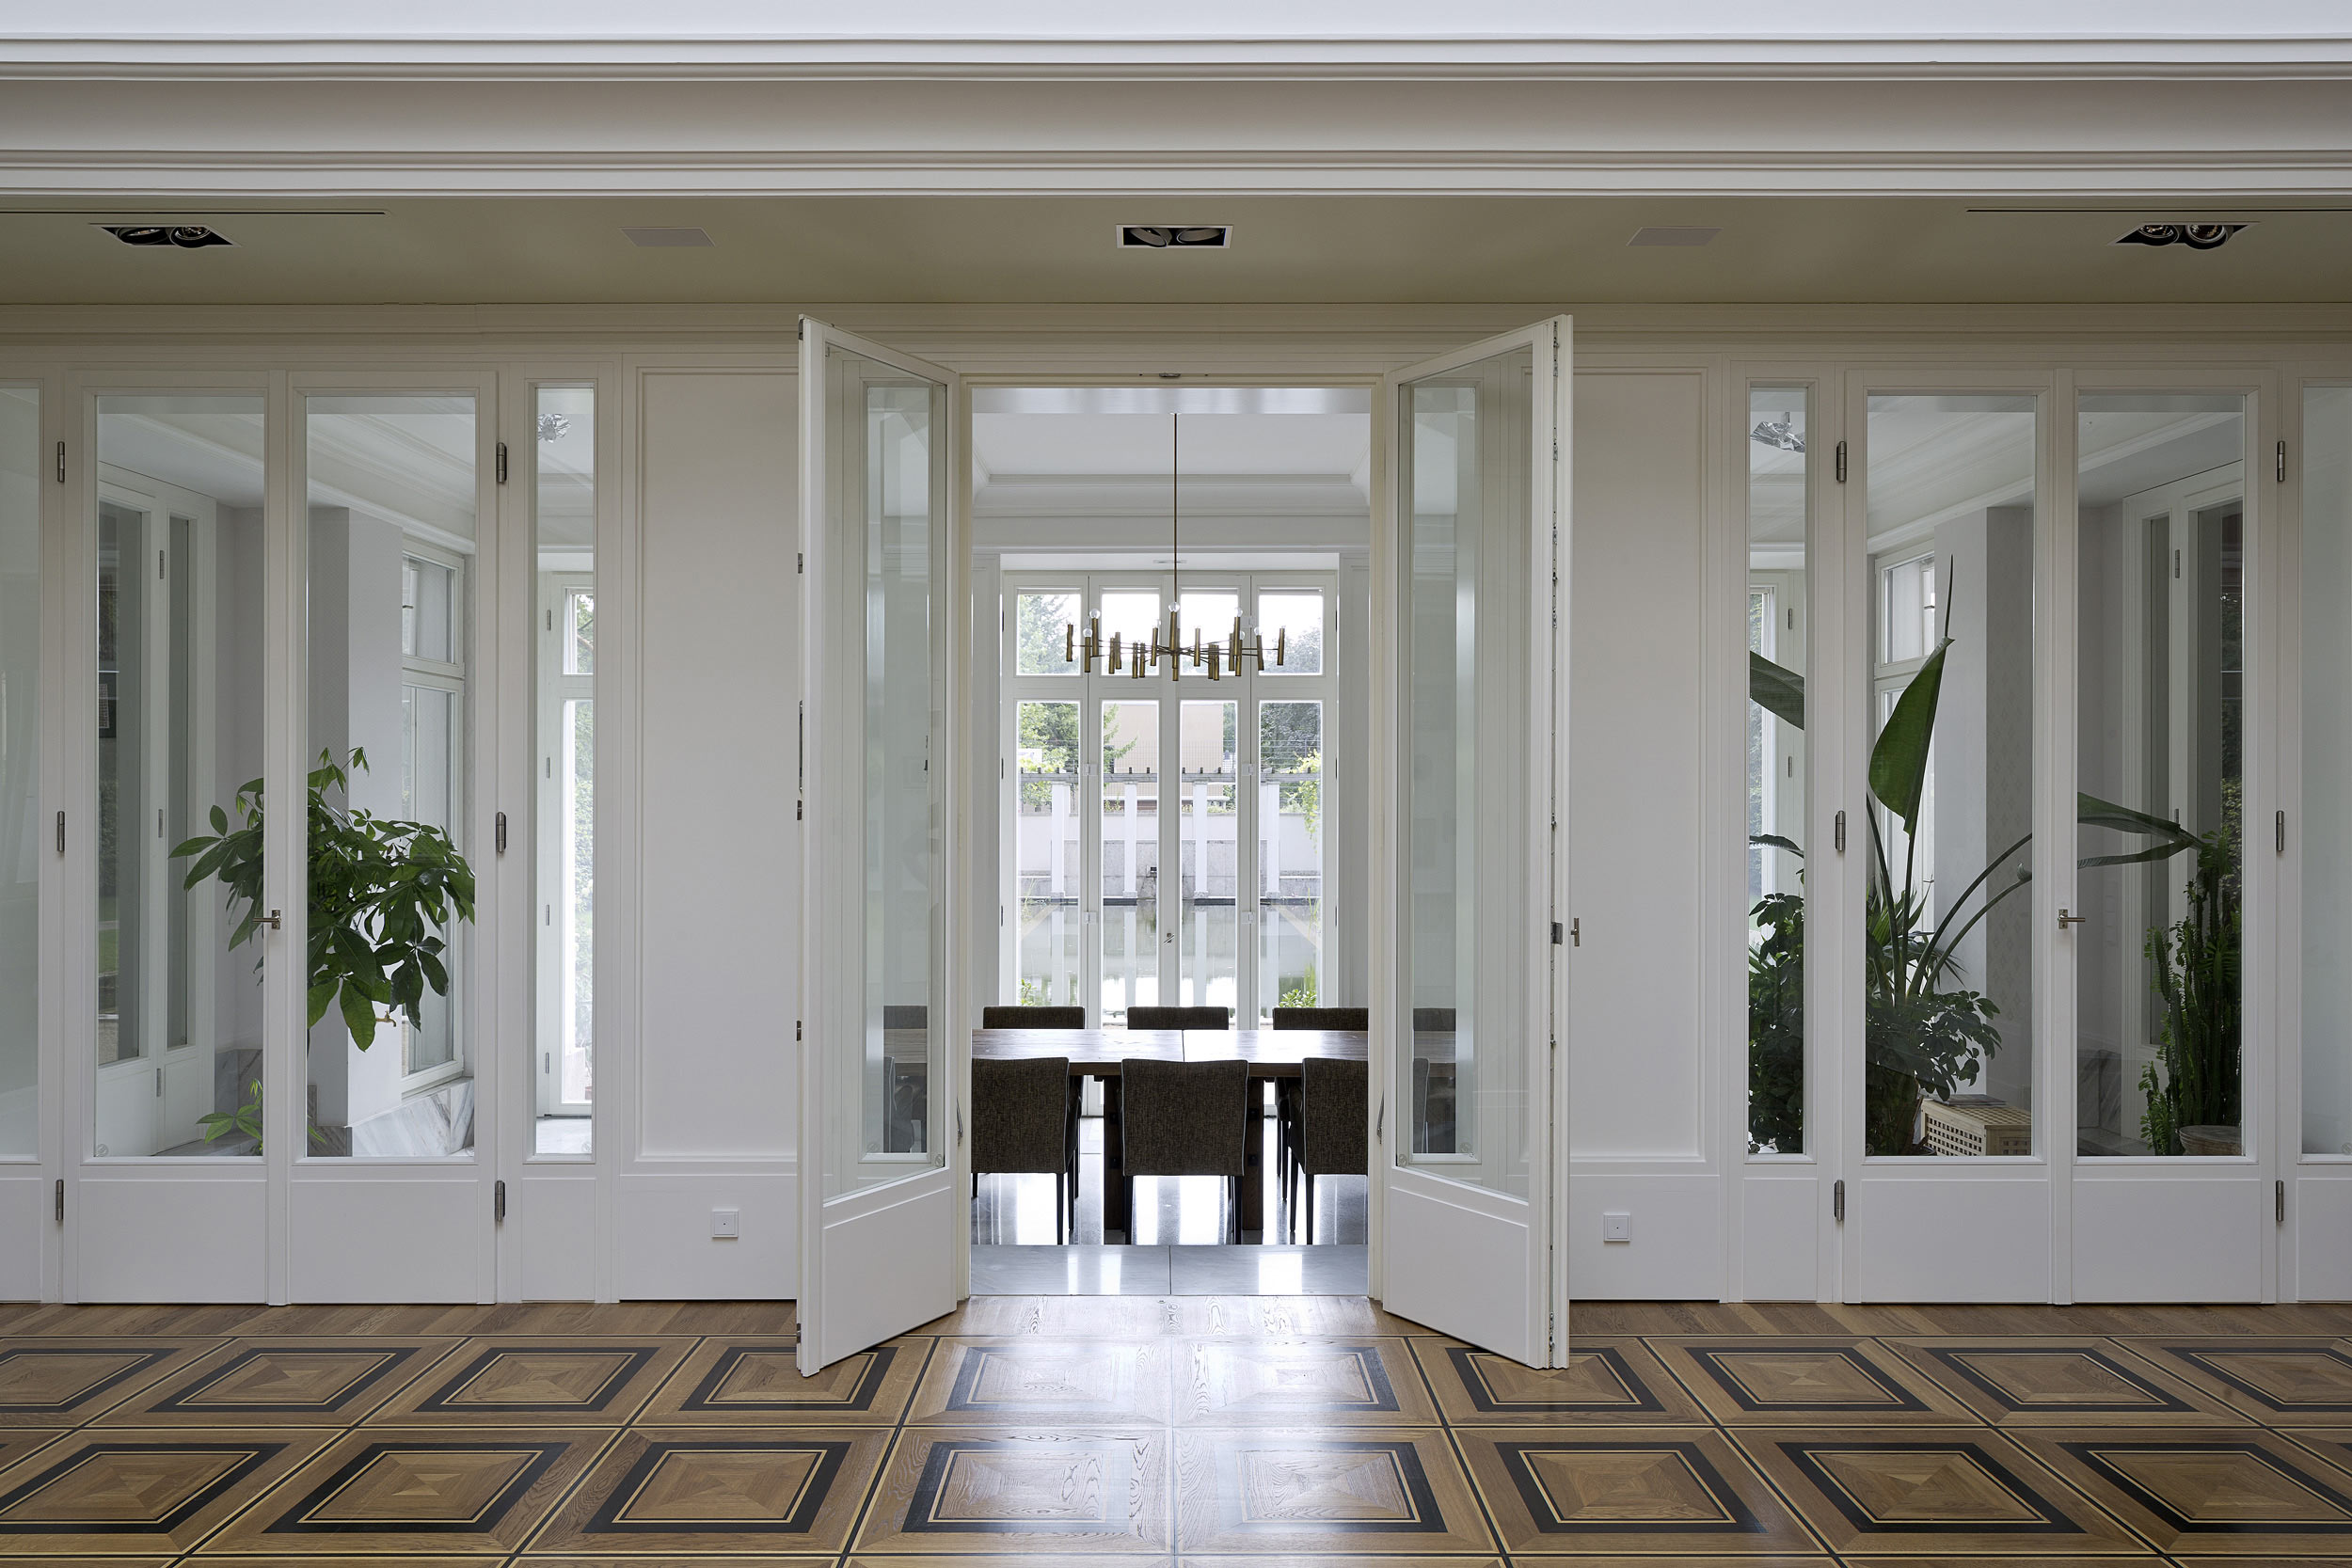 Neubau einer Villa im neoklassizistischen Stil - Der Durchgang zur Gartenorangerie mit Terrazzoboden und versenkbaren Fenstern